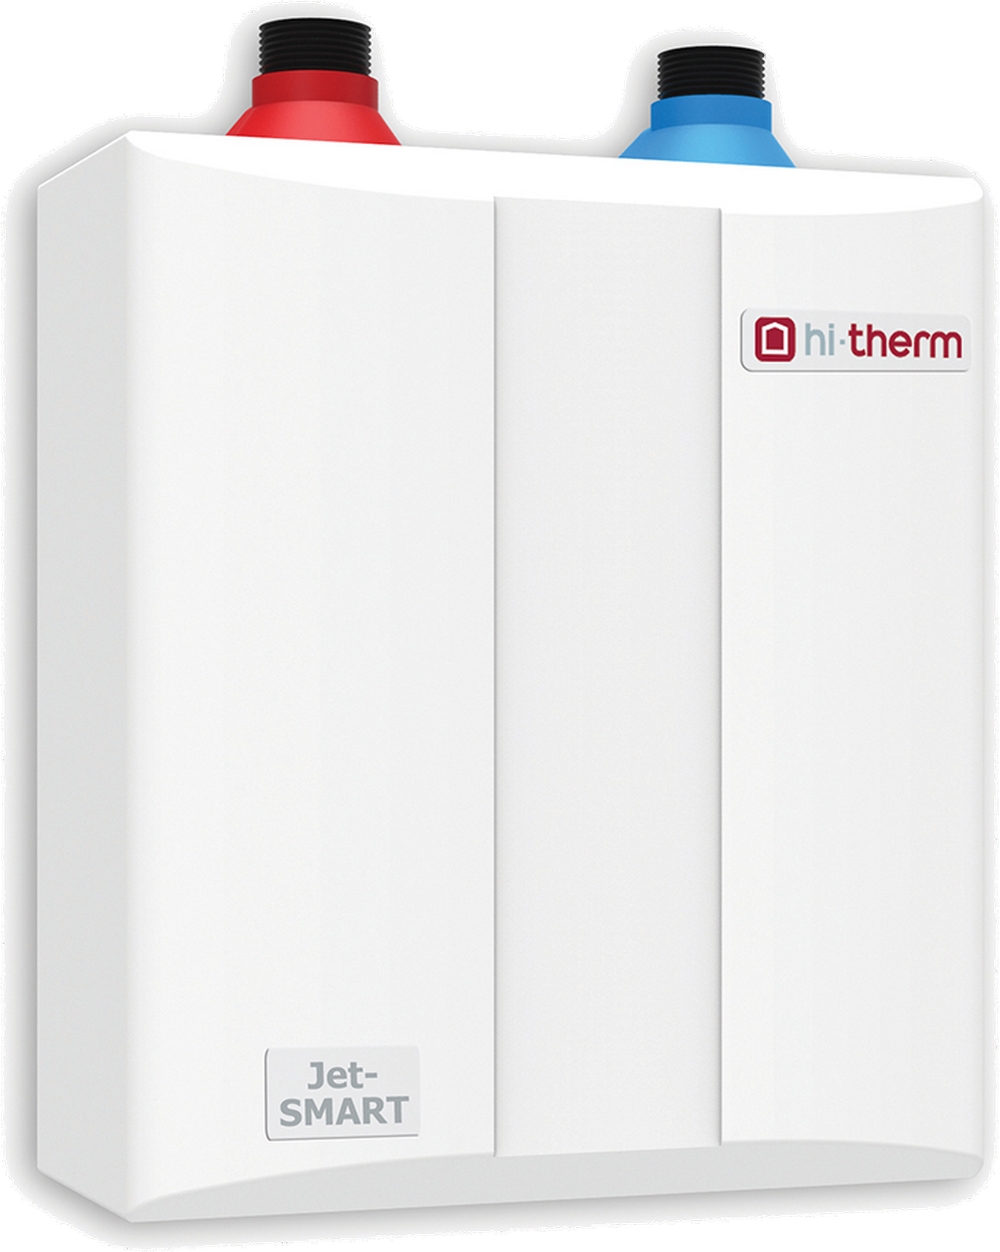 Безнапорный проточный водонагреватель Hi-Therm JET-SMART 5.0